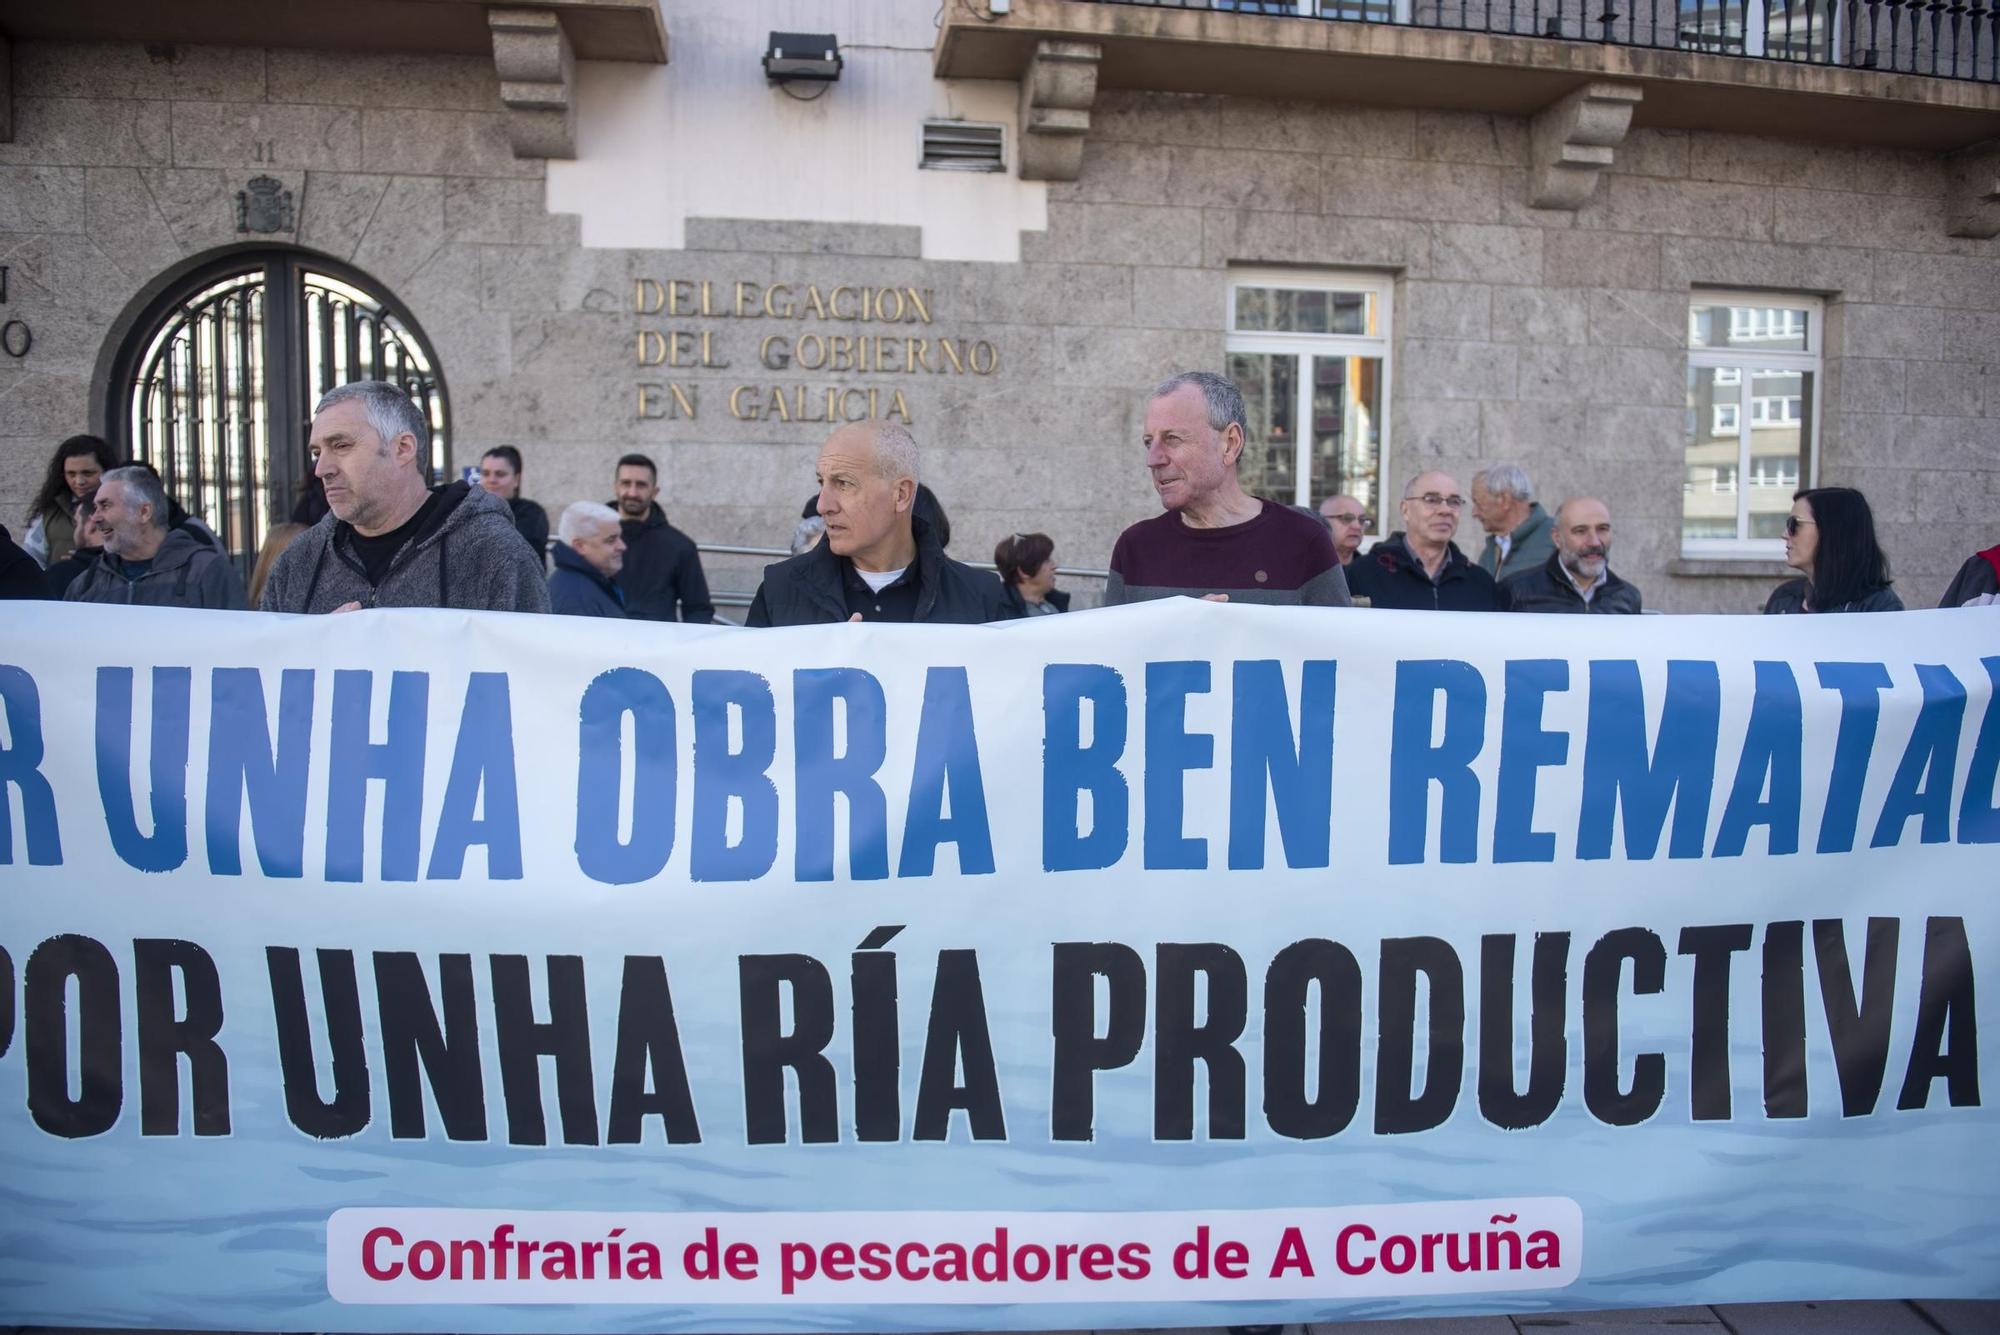 Los mariscadores de la ría de O Burgo piden compensaciones económicas: "No nos pueden dejar tirados"